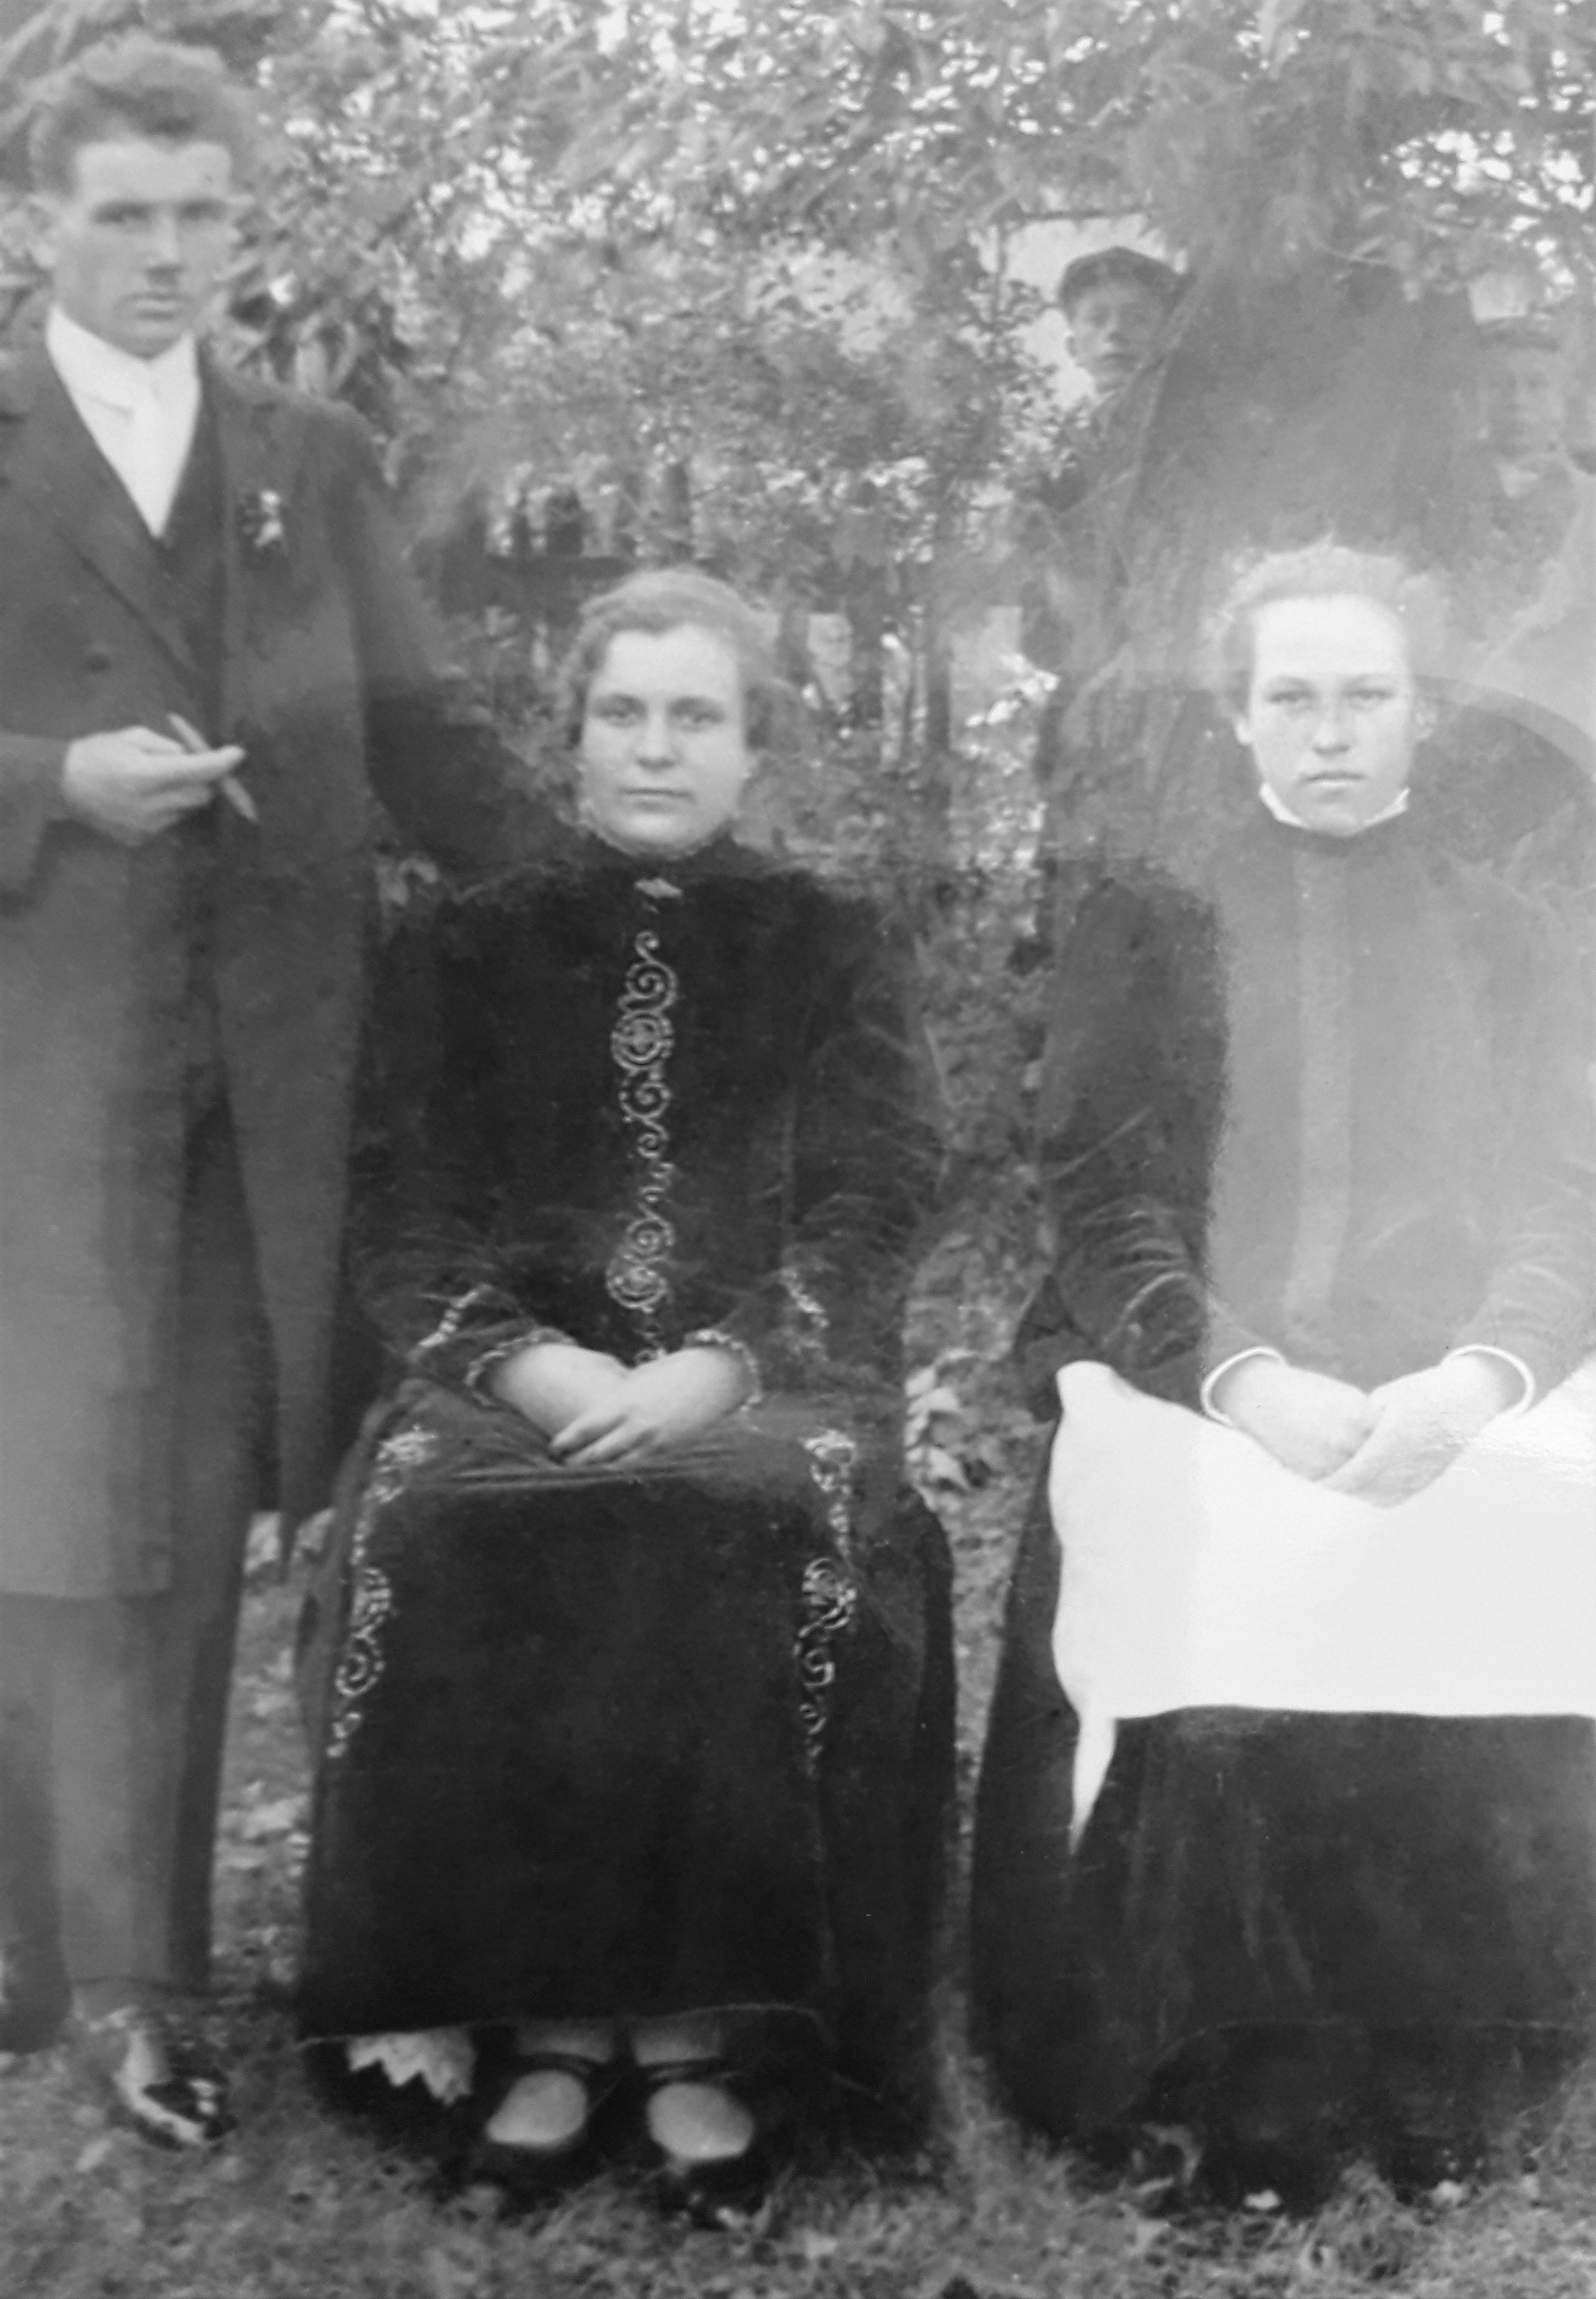 Kobieta siedząca po lewej ubrana jest w aksamitny komplet („ancug”) składający się z jakli i sukni (bez fartucha), gdzie brzegi frontowego panelu spódnicy zostały podkreślone zdobieniem. Lata 20. (?) XX w., fot. ze zbiorów Izby łod Starki w Chudowie